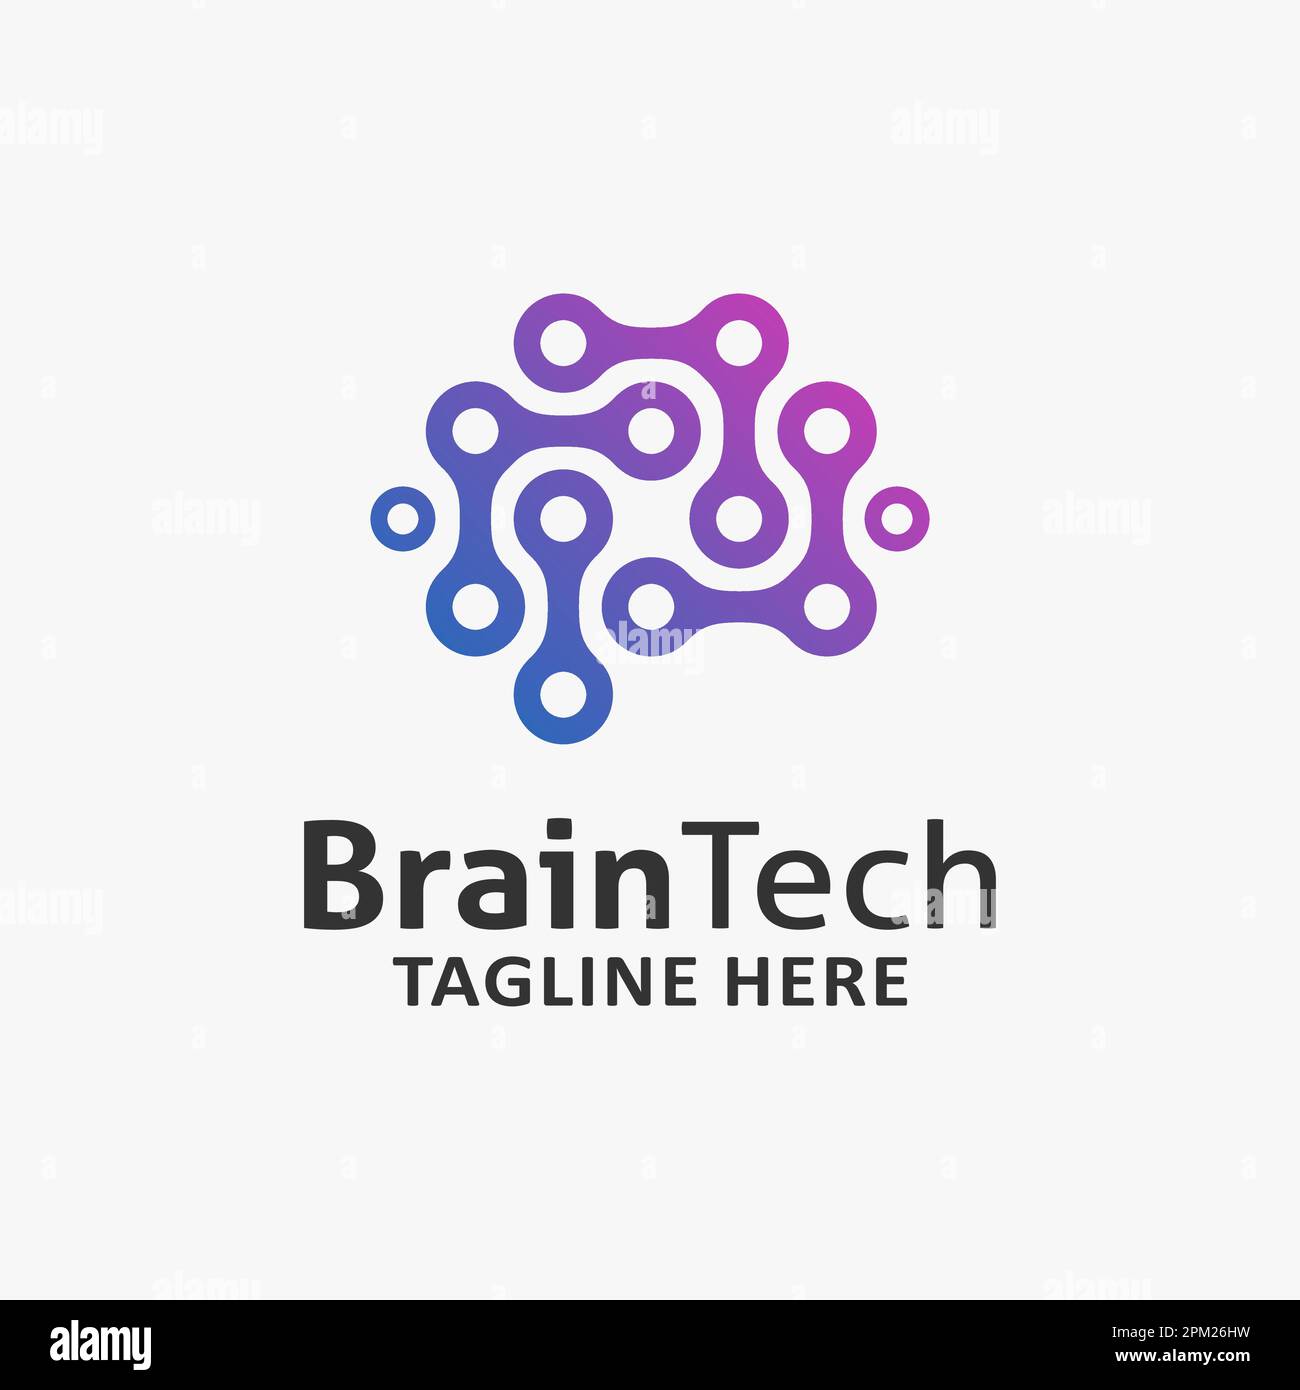 Brain tech logo design Stock Vector